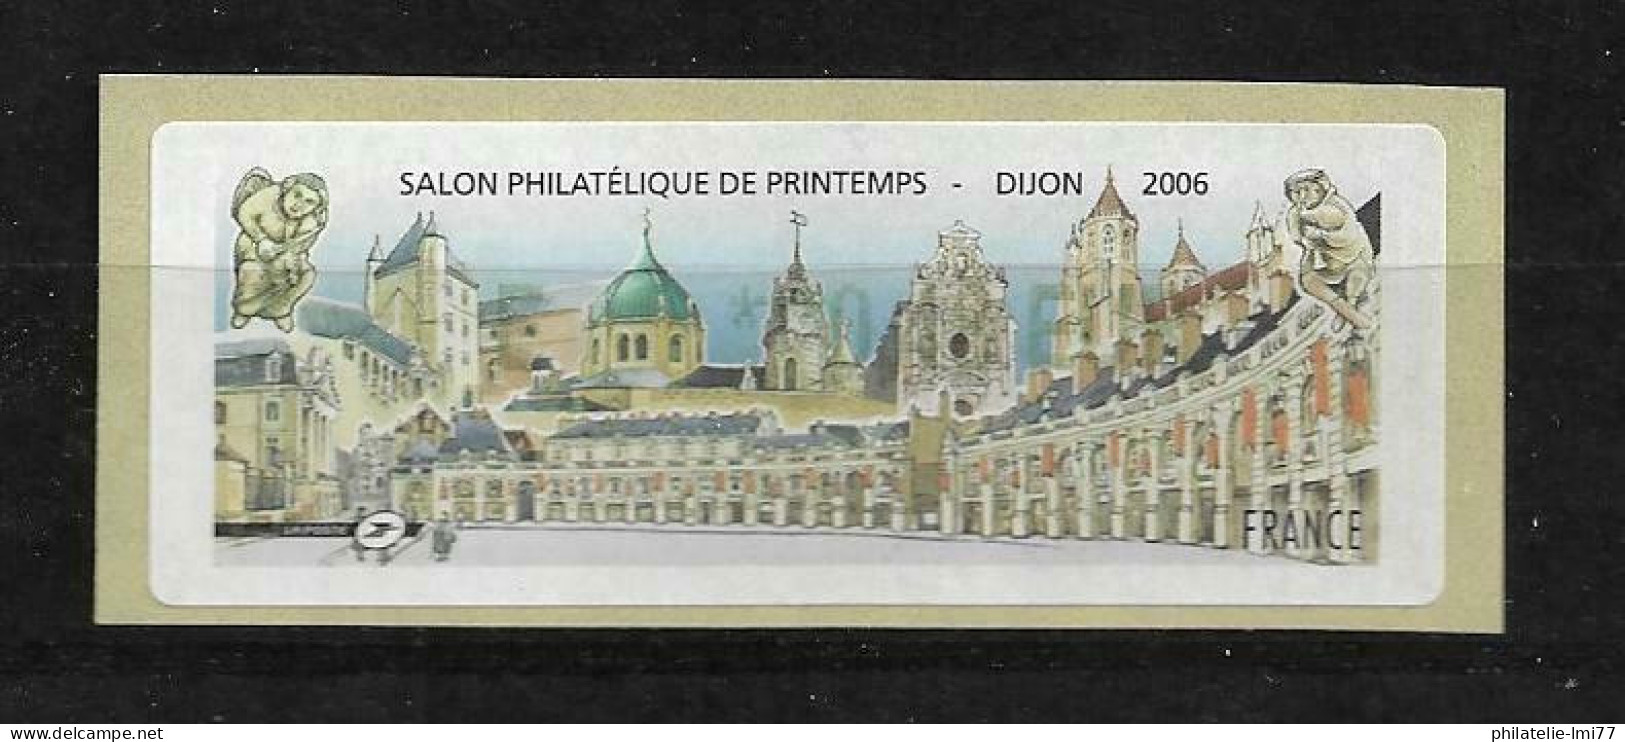 LISA 0,48 € - Salon Philatélique De Printemps - Dijon 2006 - 1999-2009 Illustrated Franking Labels